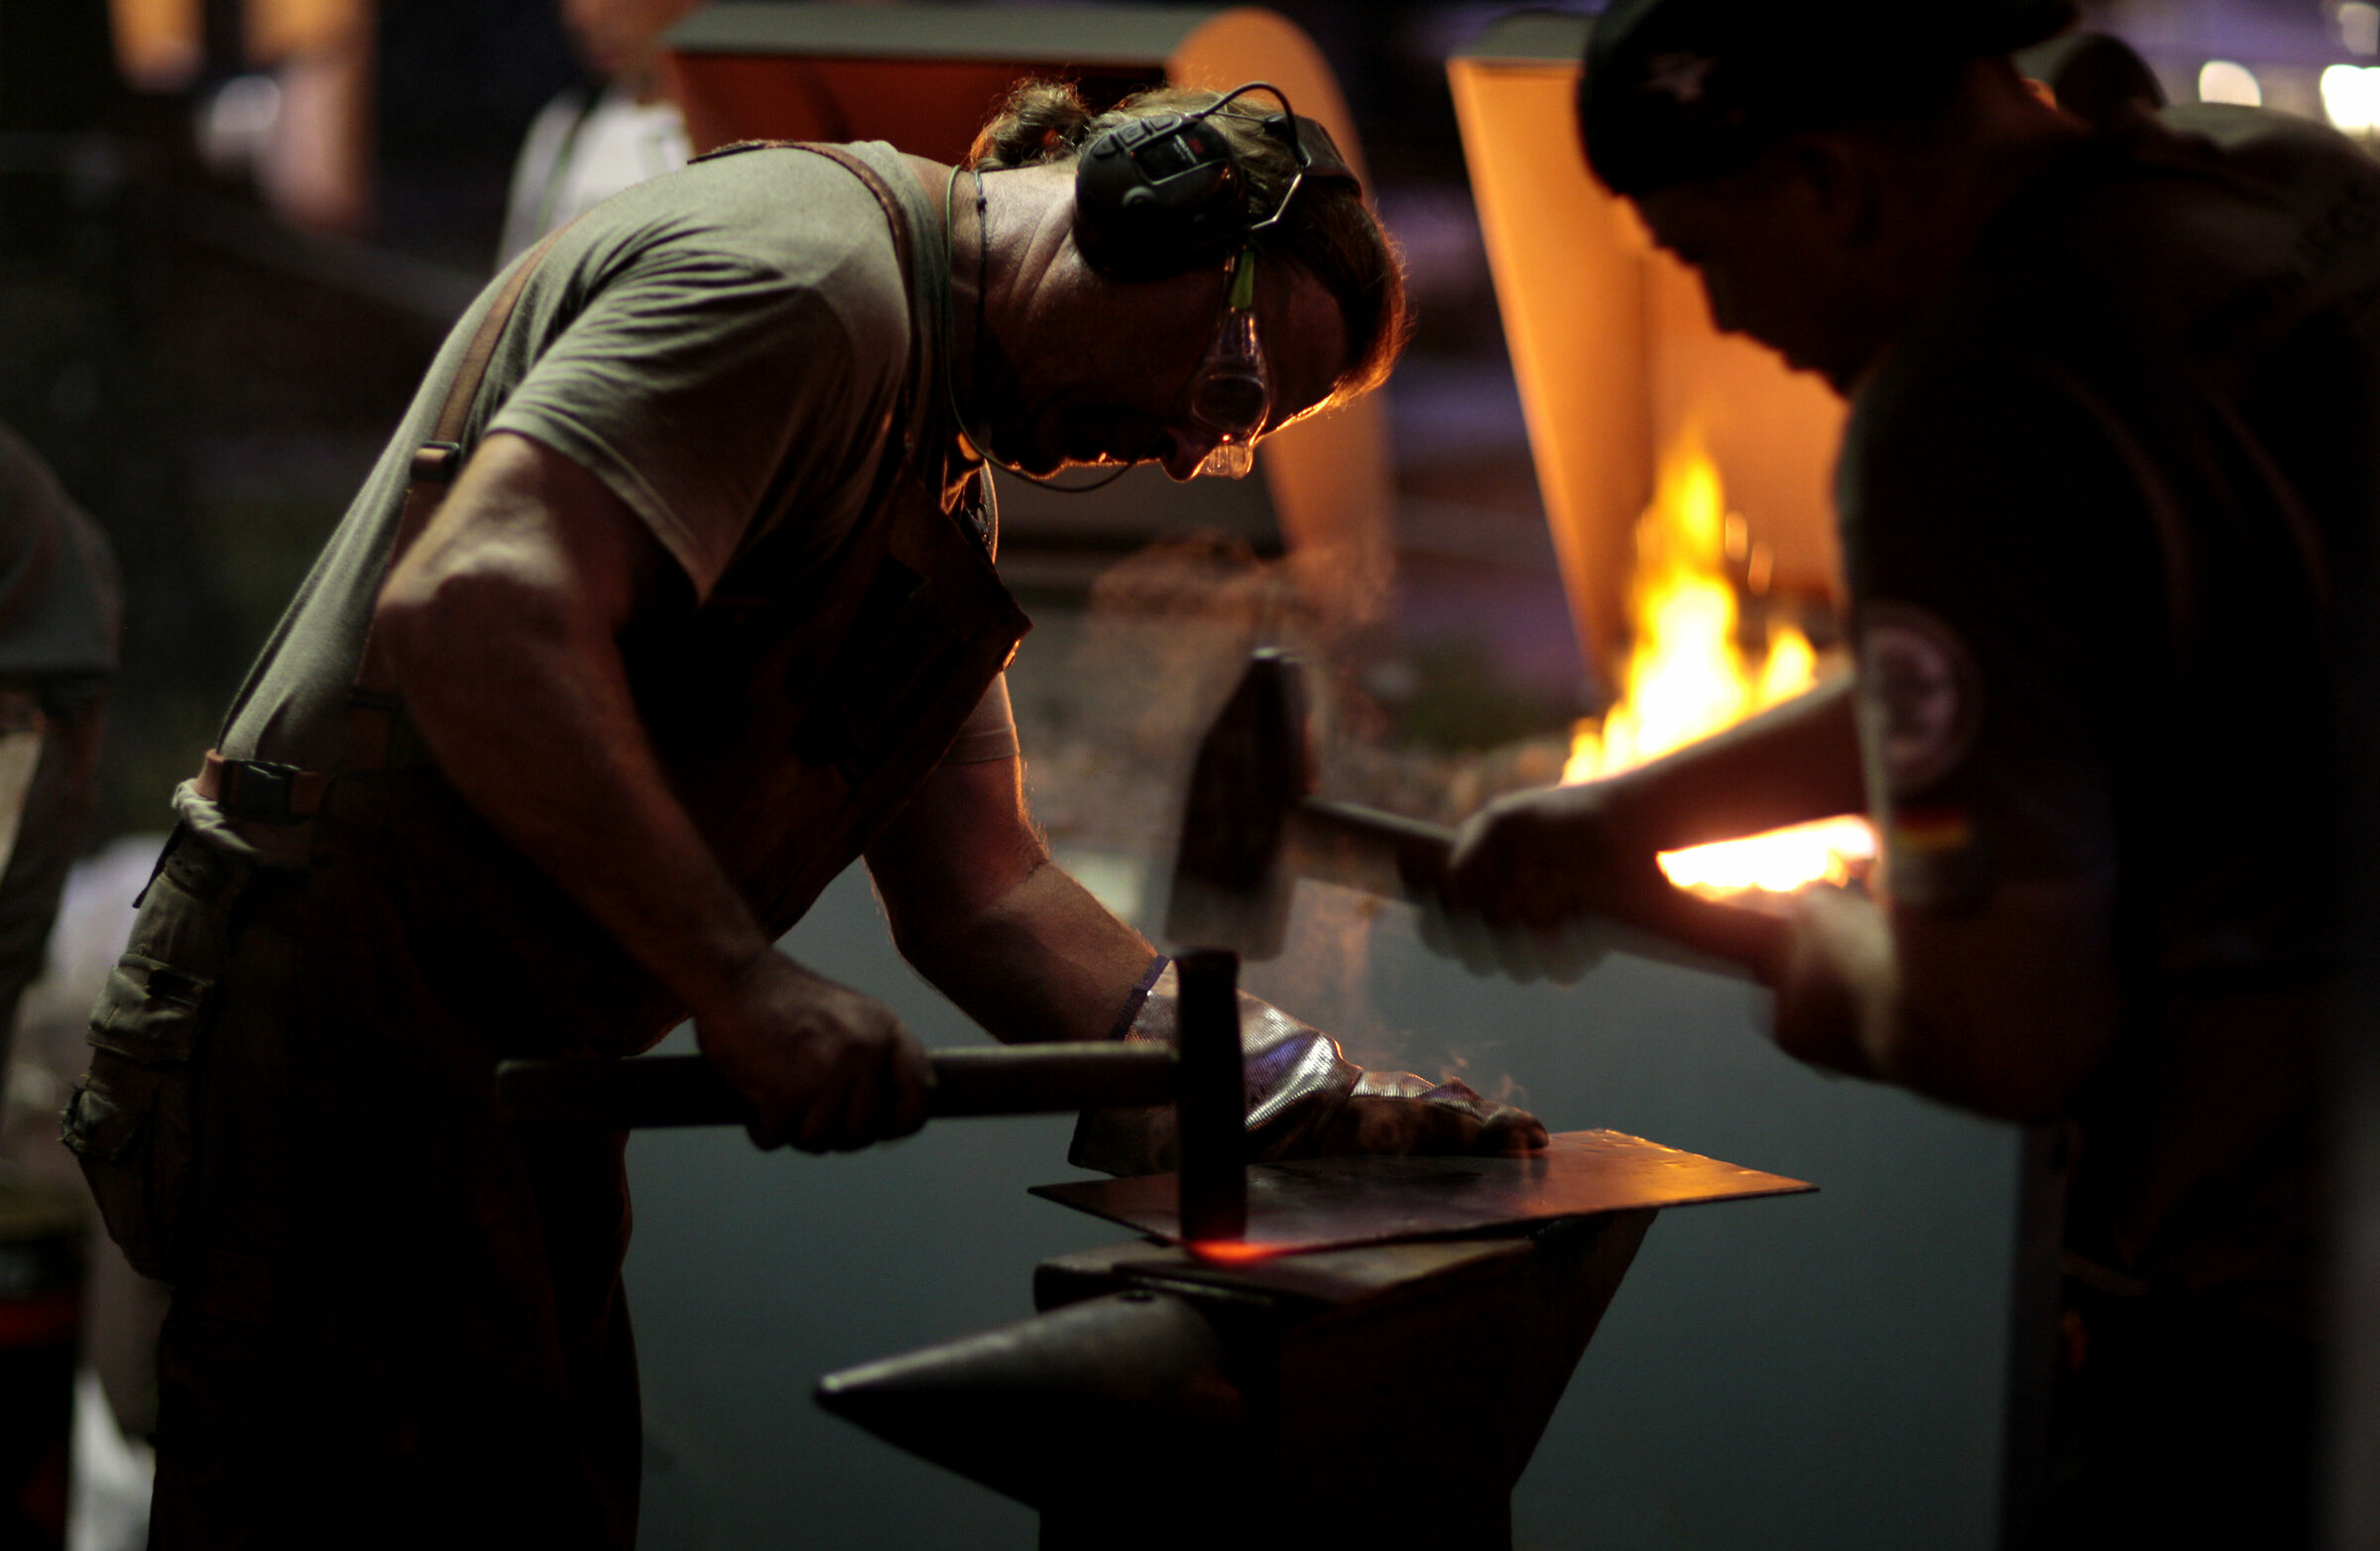 Biennale blacksmithing art...